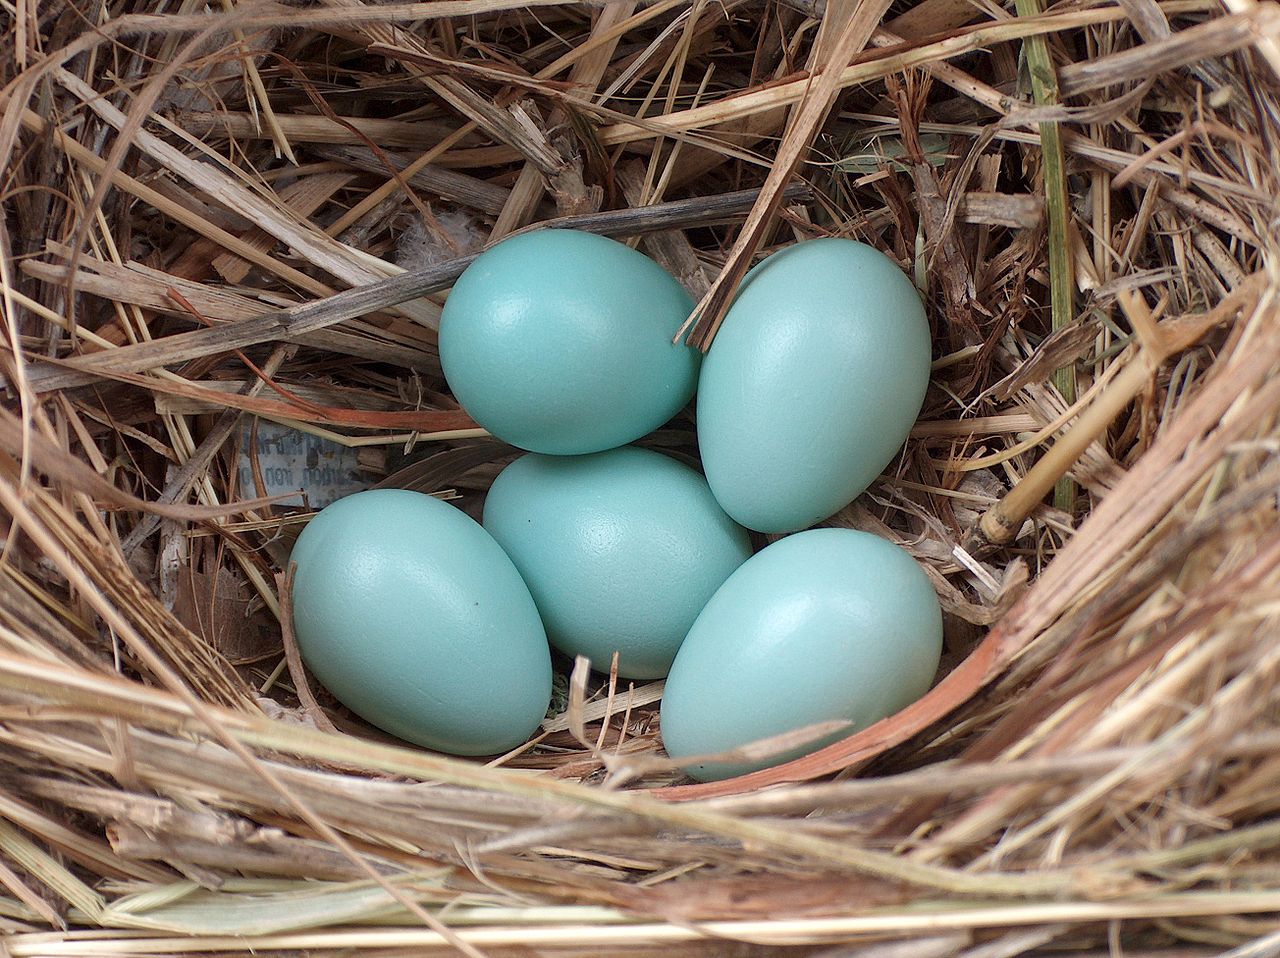 Starling jajca. Polaganje običajnih pastirskih jajc